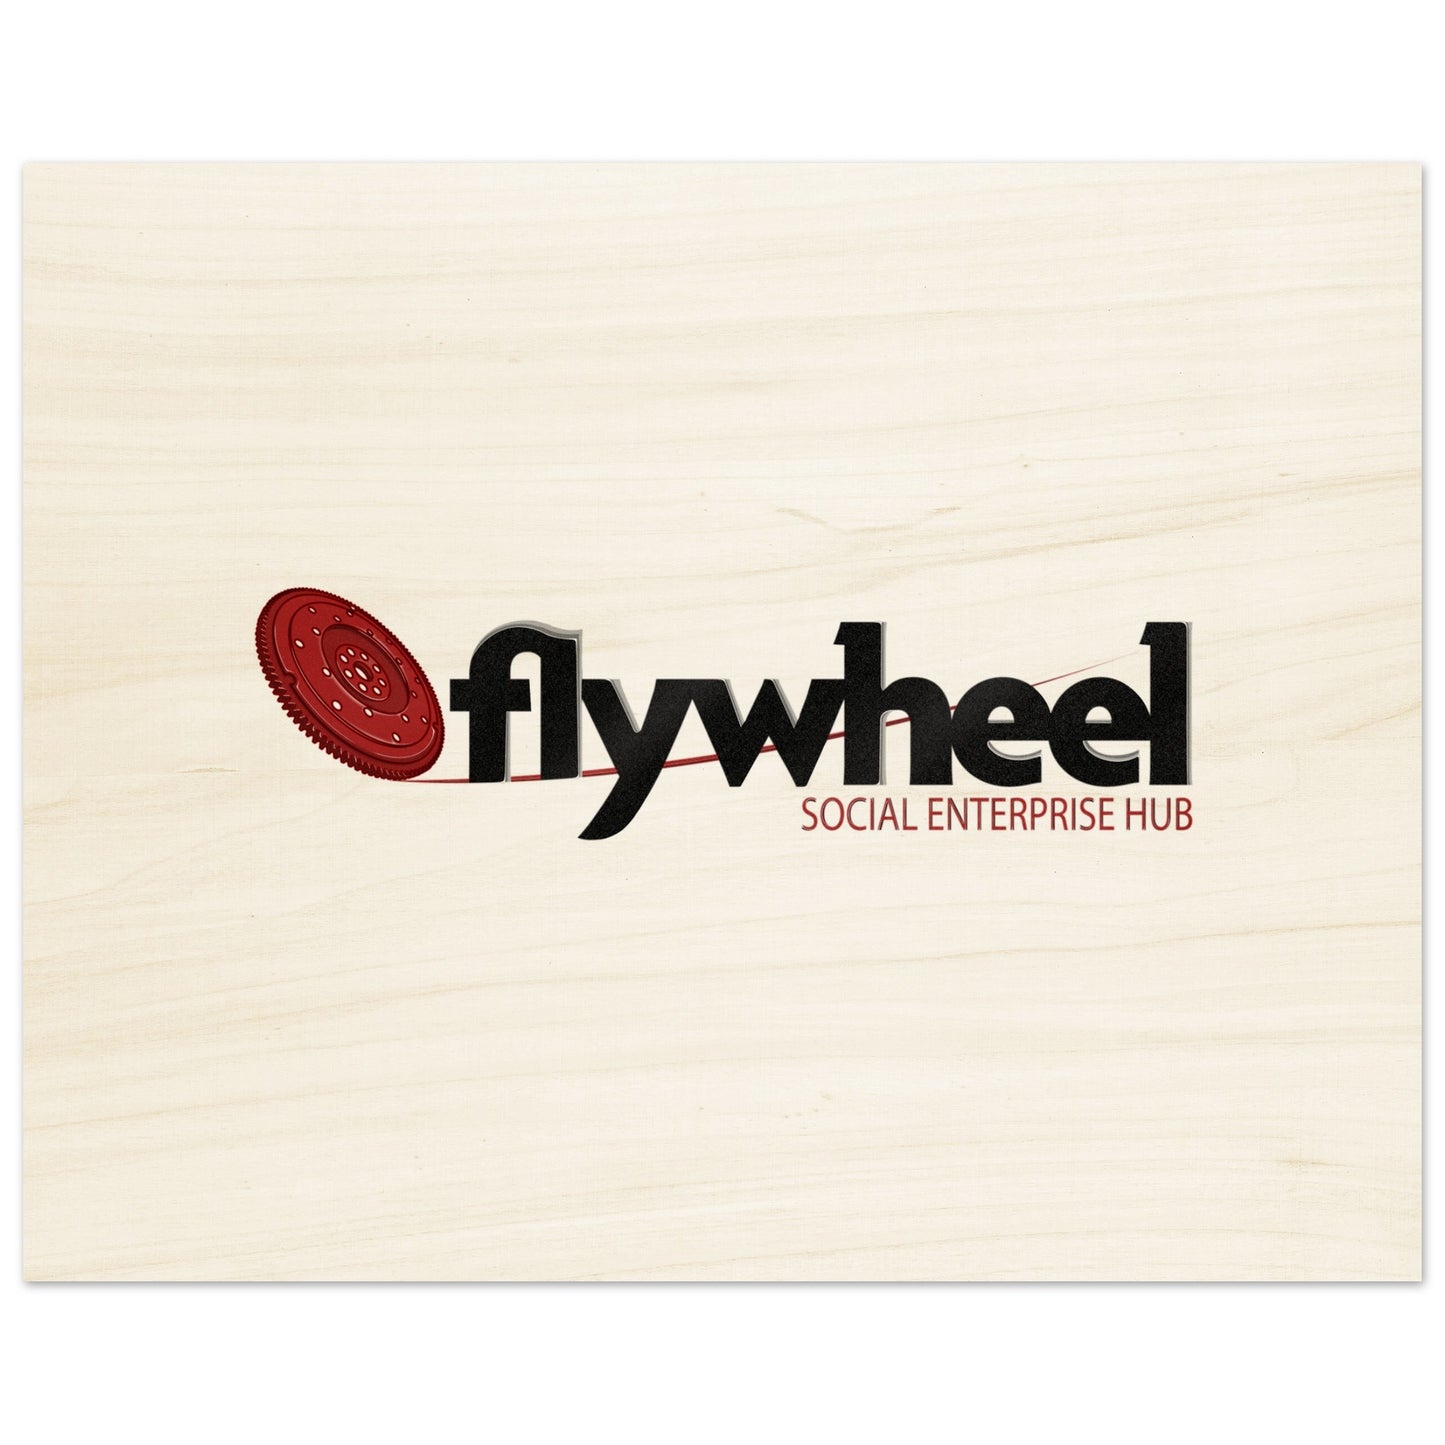 Flywheel Social Enterprise Hub - Wood Prints